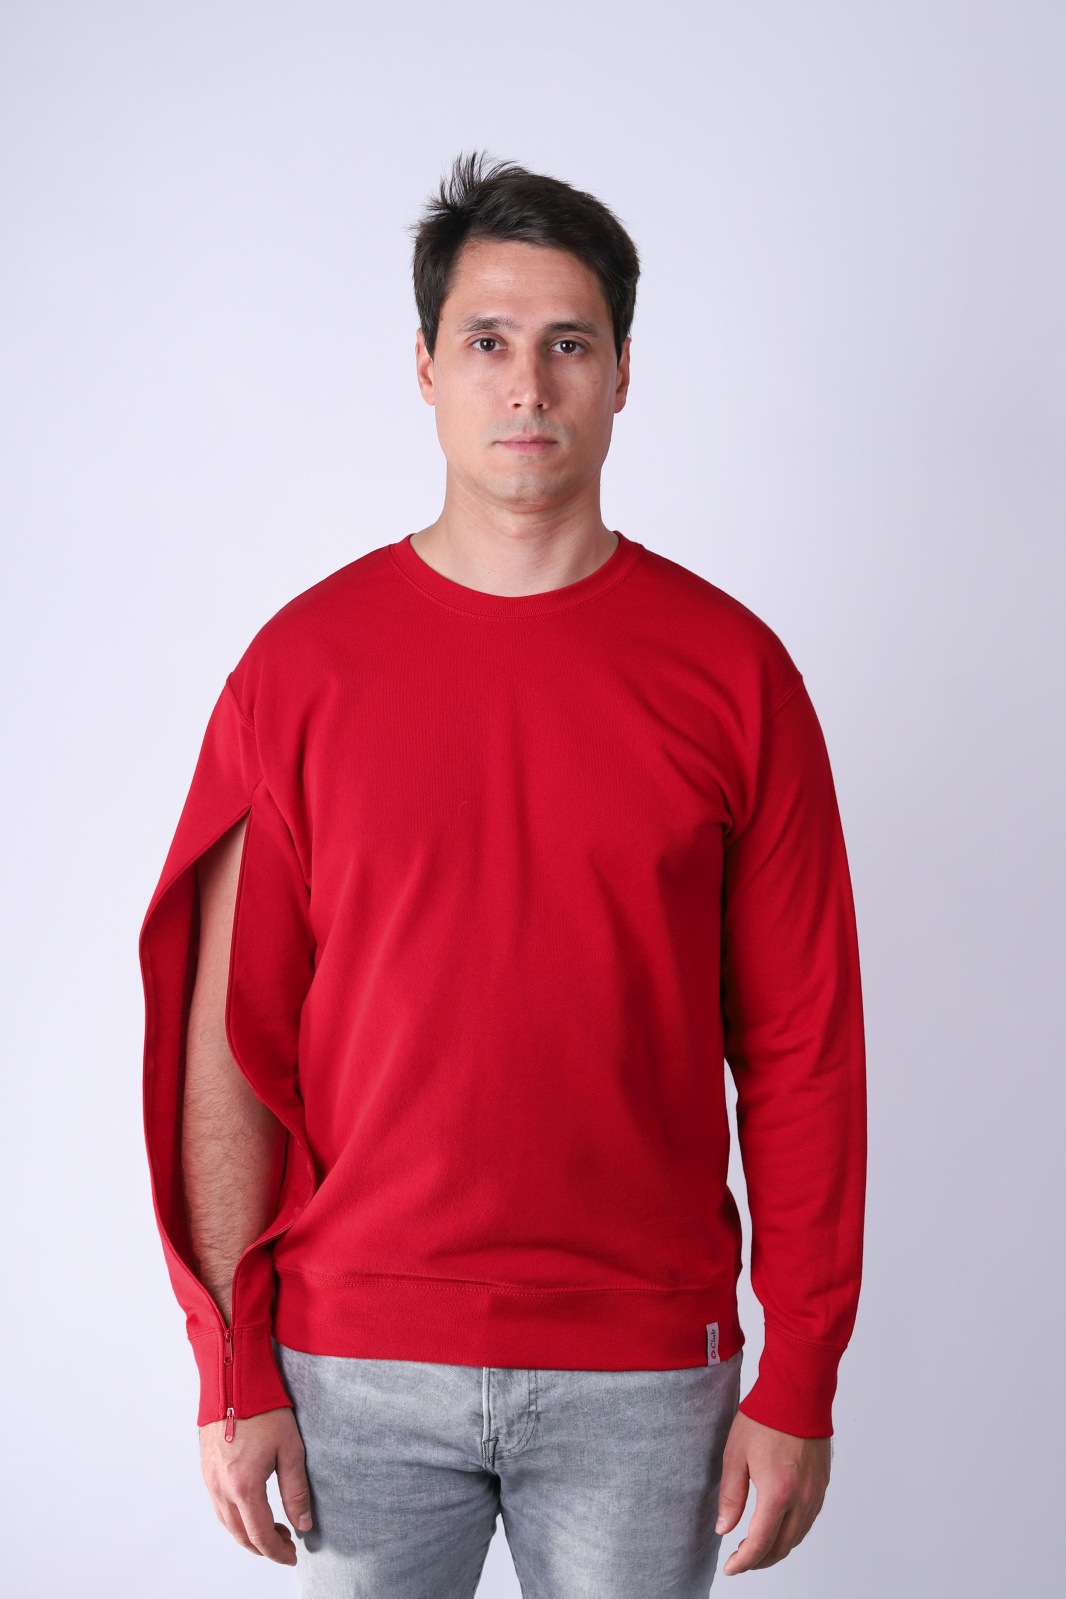 Bluza męska dla osób z przetoką - Czerwony